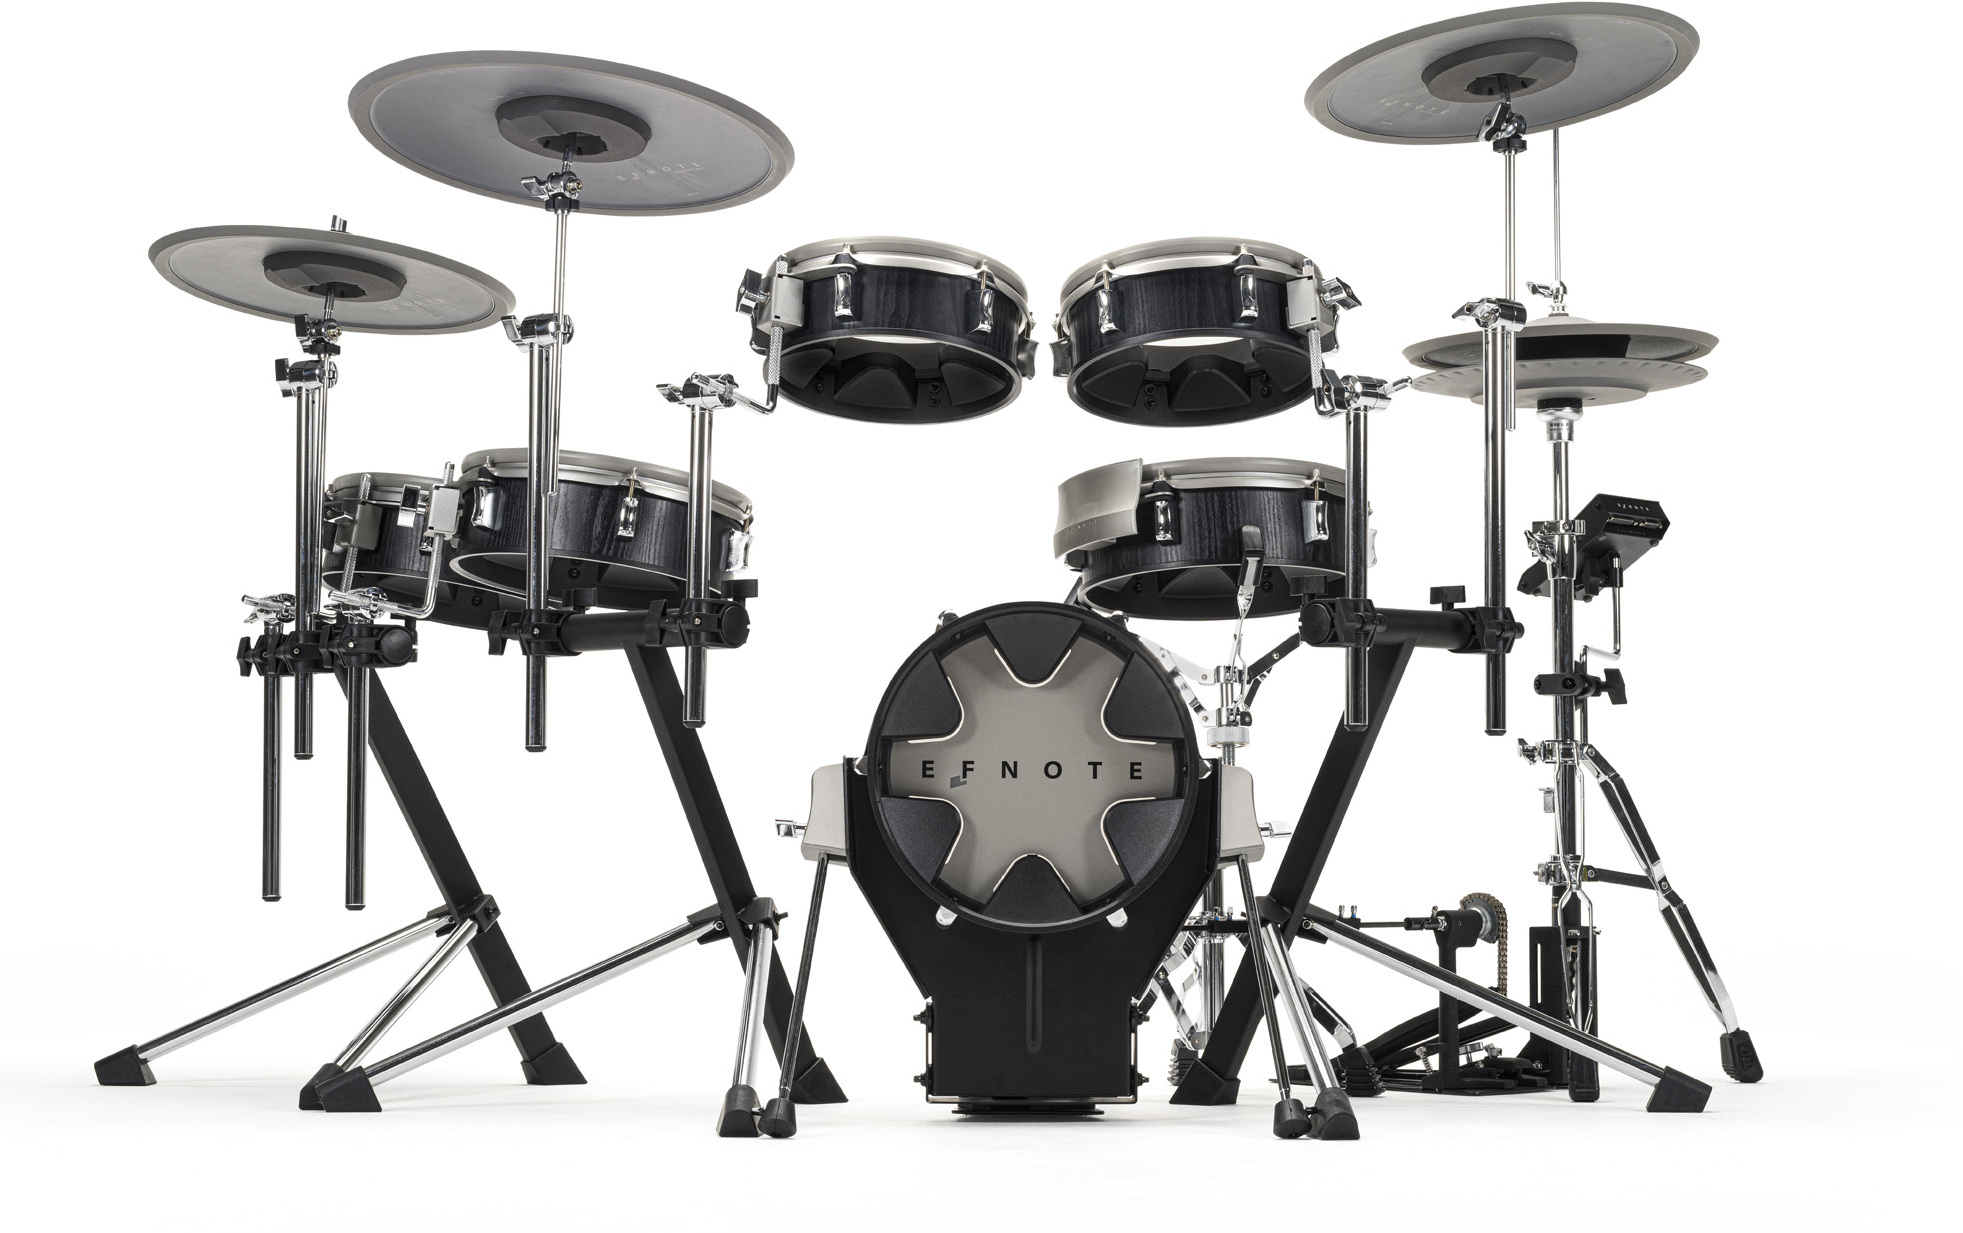 Efnote Efd3x Drum Kit - Batería electrónica completa - Main picture